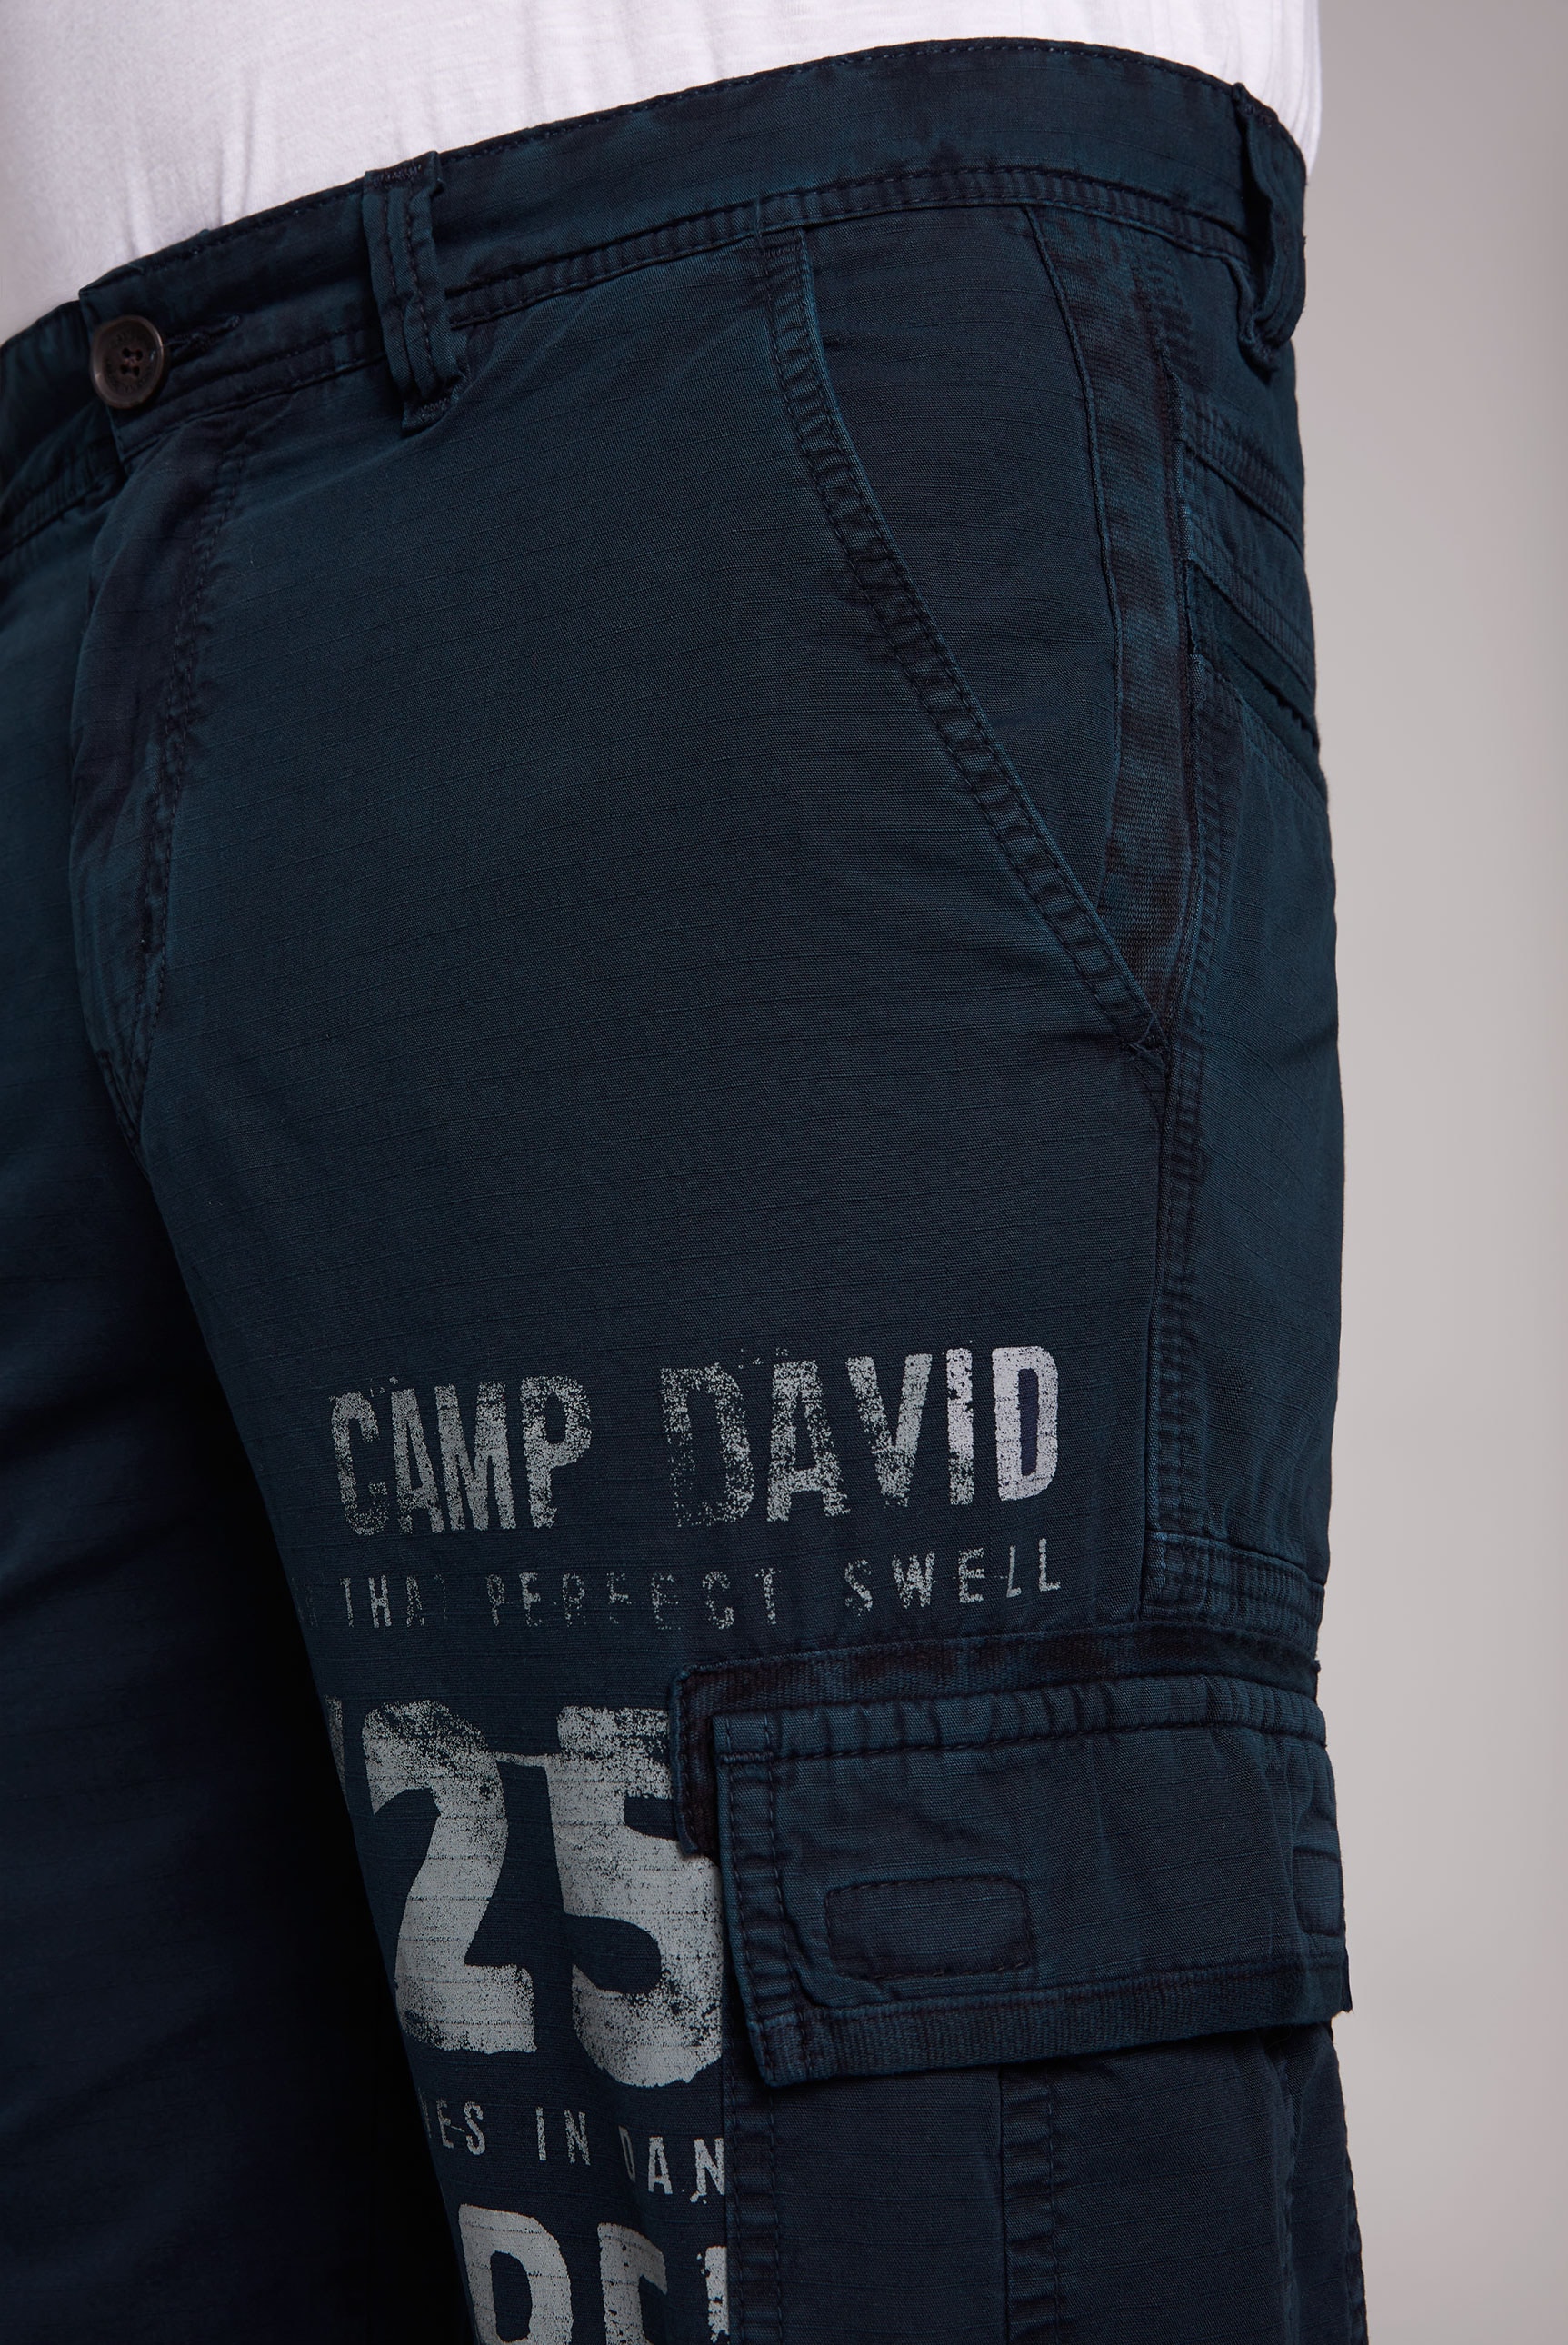 CAMP DAVID Cargoshorts, mit auffälligen Prints